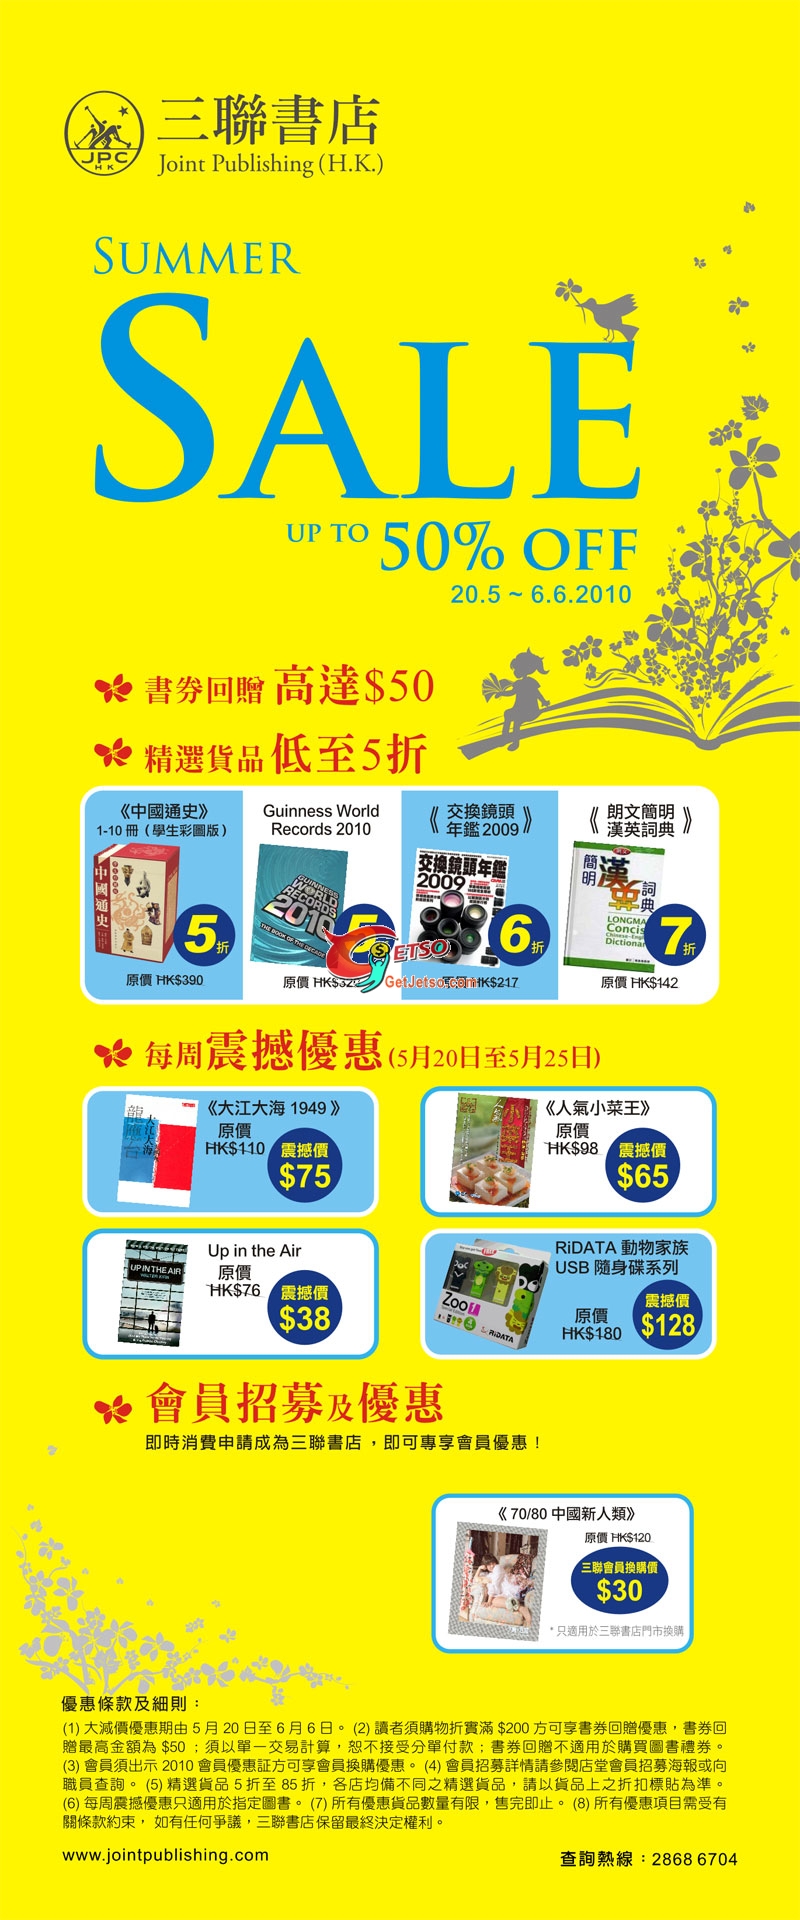 三聯書店、中華書局減價,精選書藉低至半價,書券回贈高達(至10年6月6日)圖片1